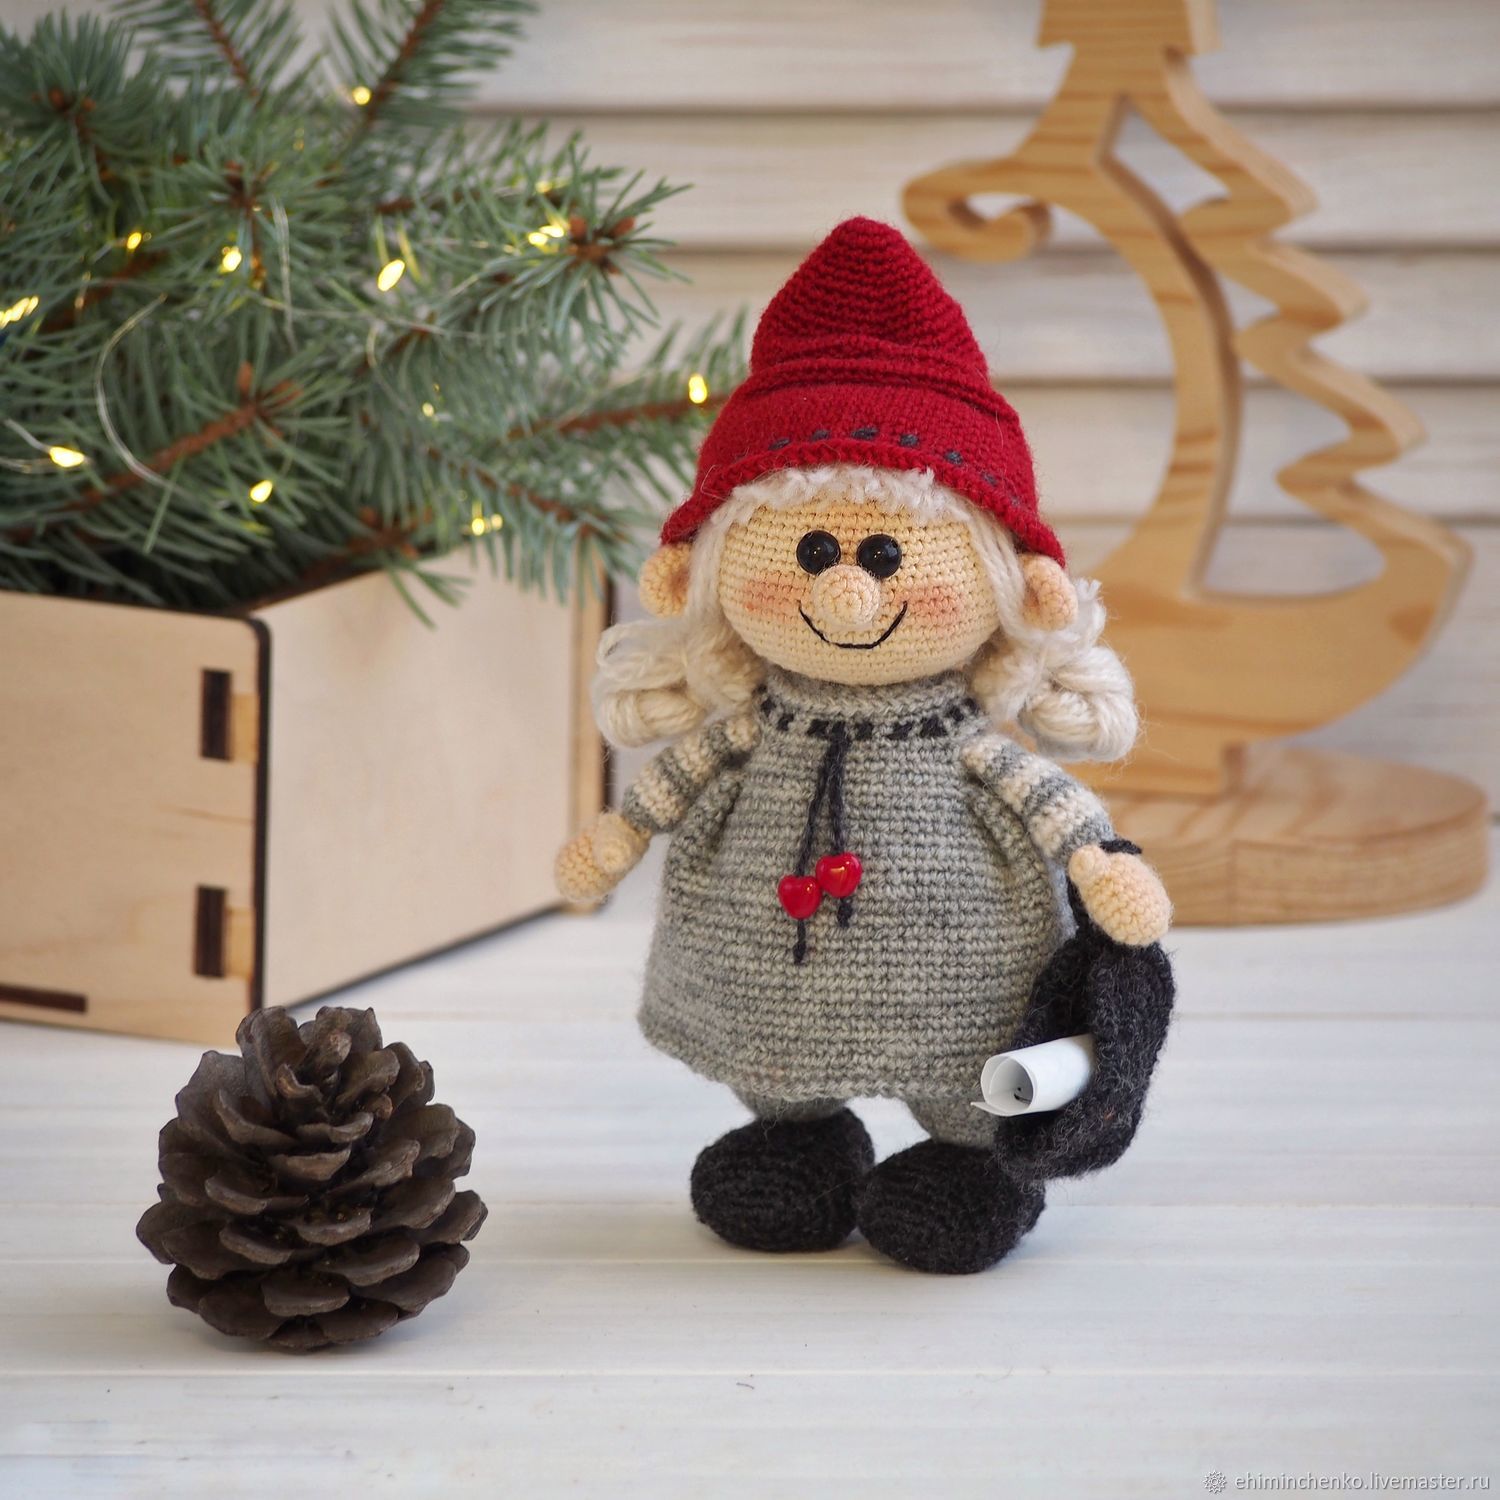  New Year's gnome - keeper of heartfelt wishes, Christmas gifts, Yoshkar-Ola,  Фото №1